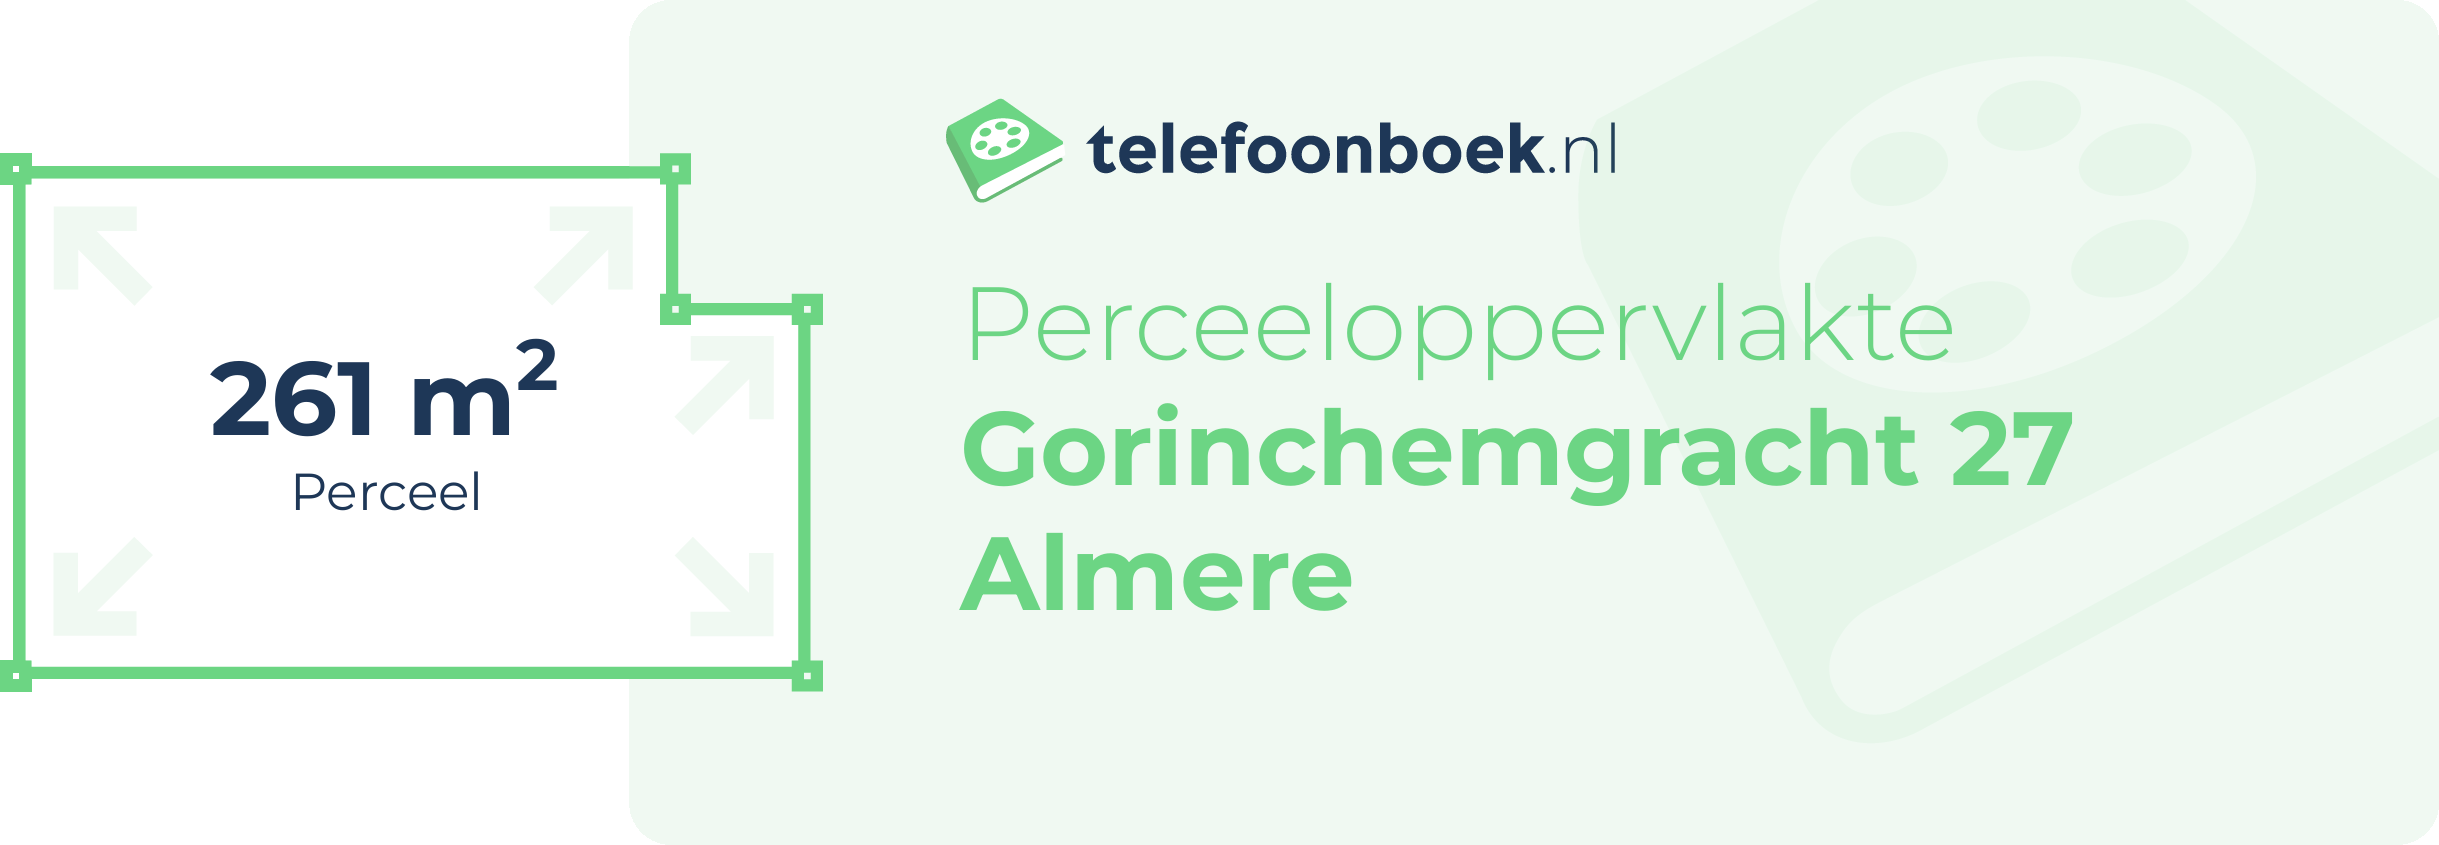 Perceeloppervlakte Gorinchemgracht 27 Almere